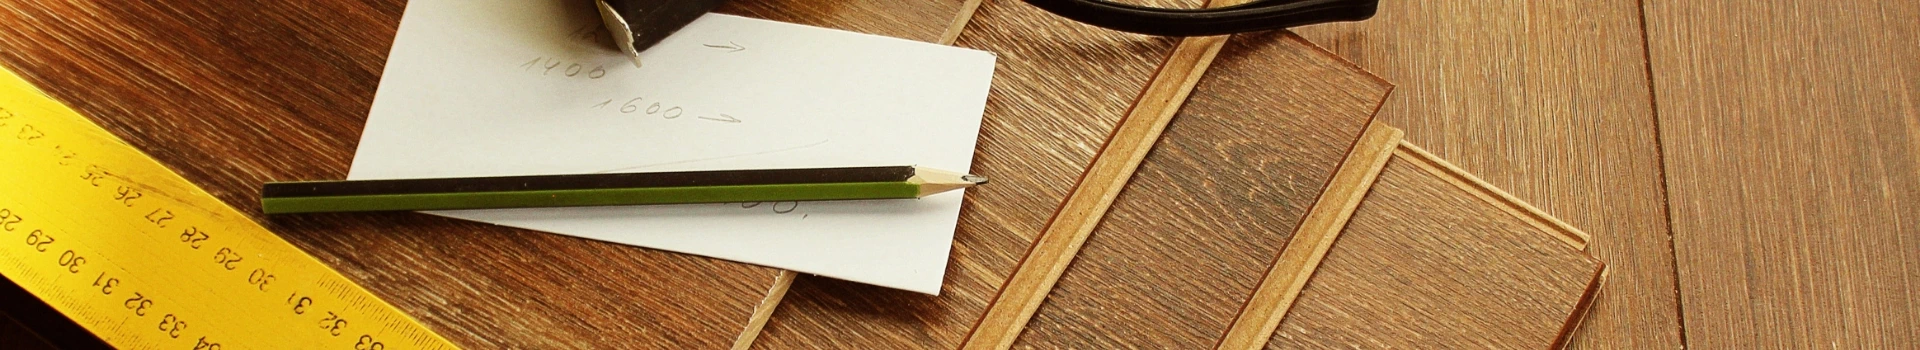 Dokument oraz ołówek leżące na deskach